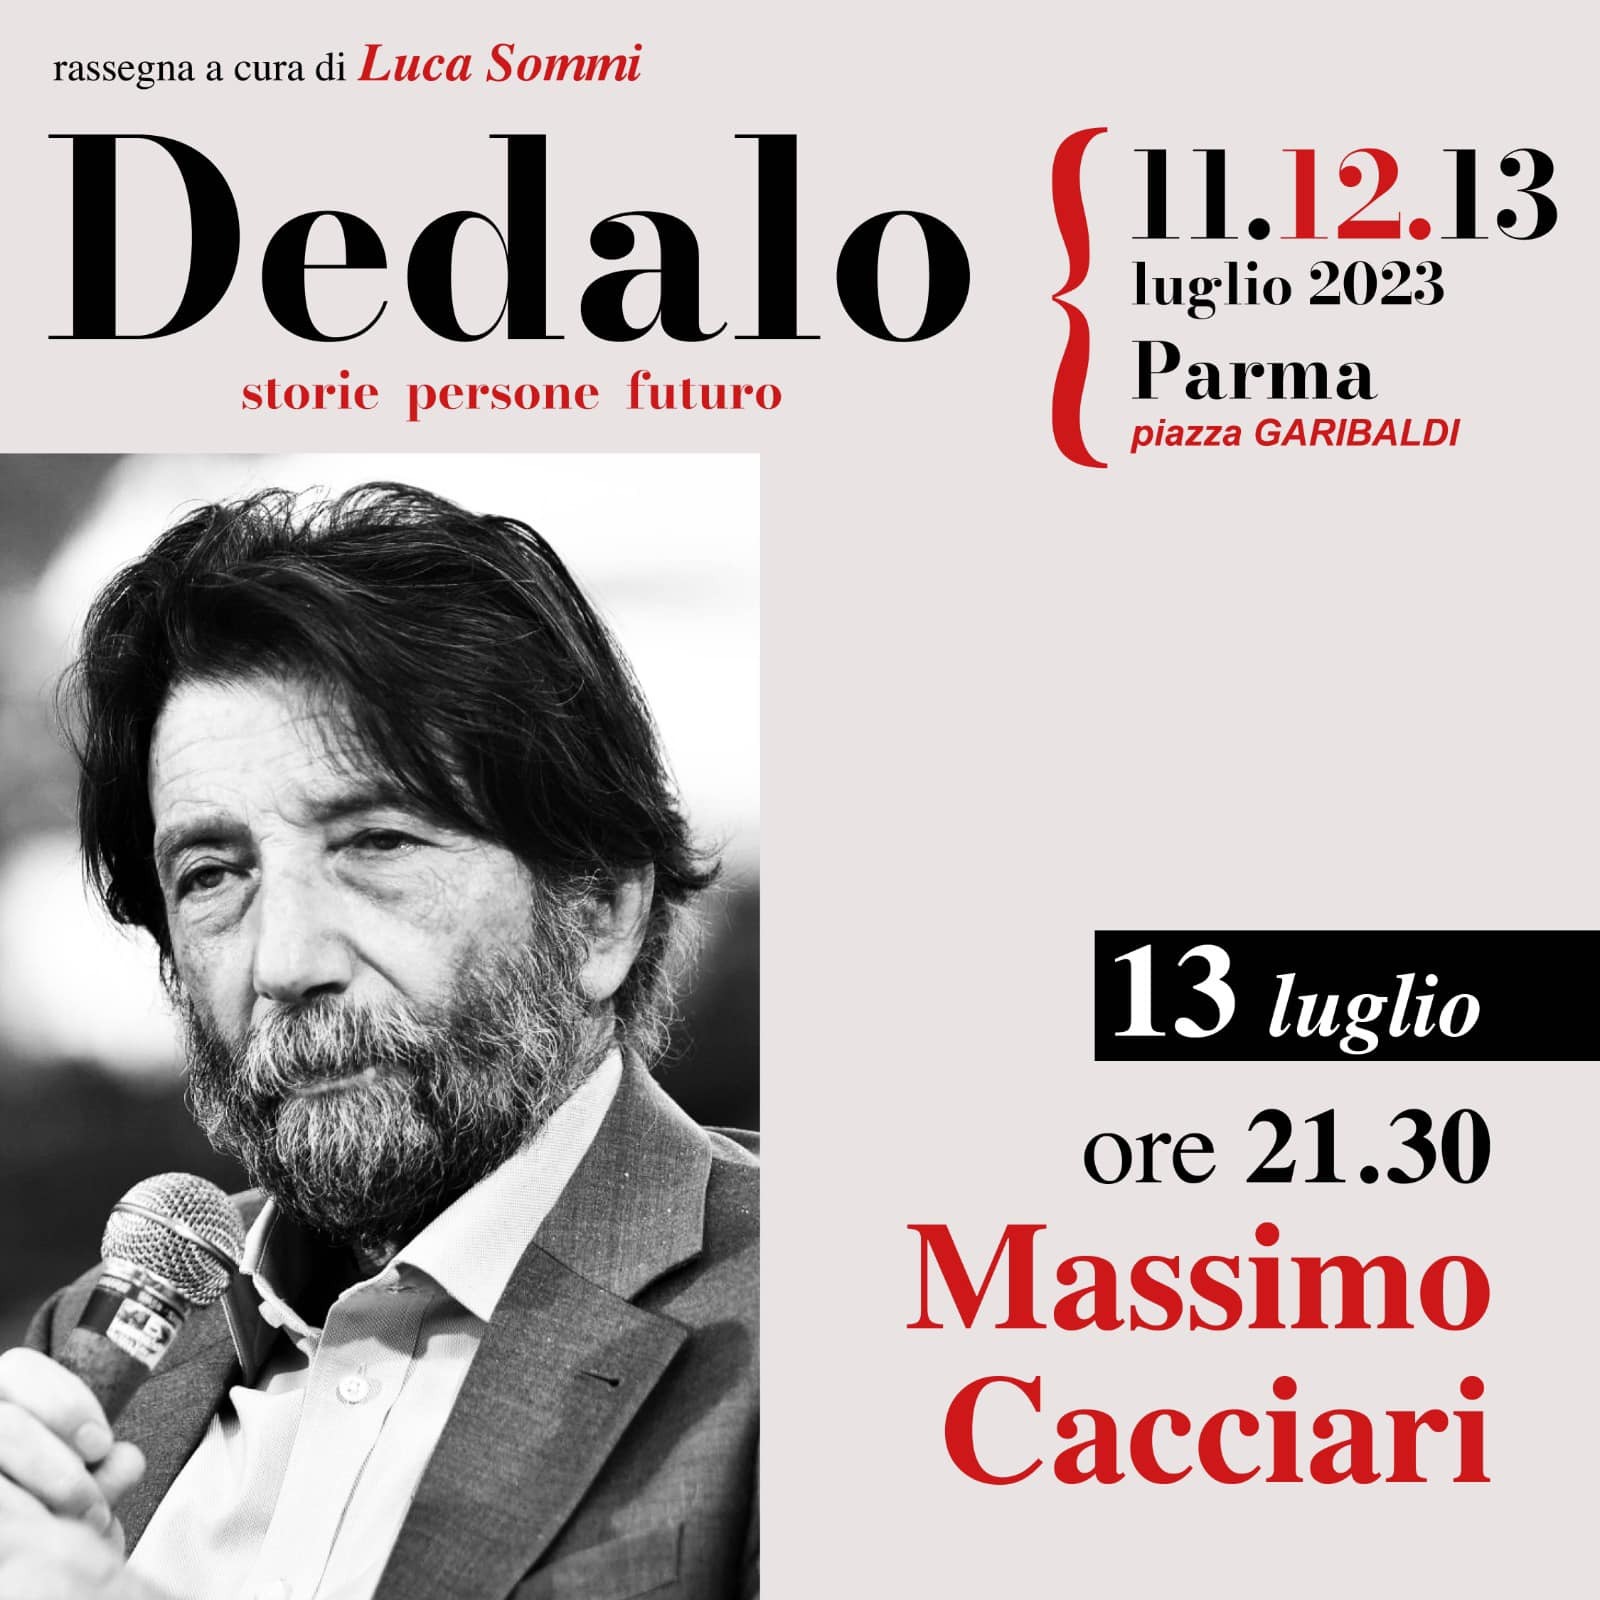 Massimo Cacciari a “Dedalo”, un salotto di incontri curati da Luca Sommi in piazza Garibaldi